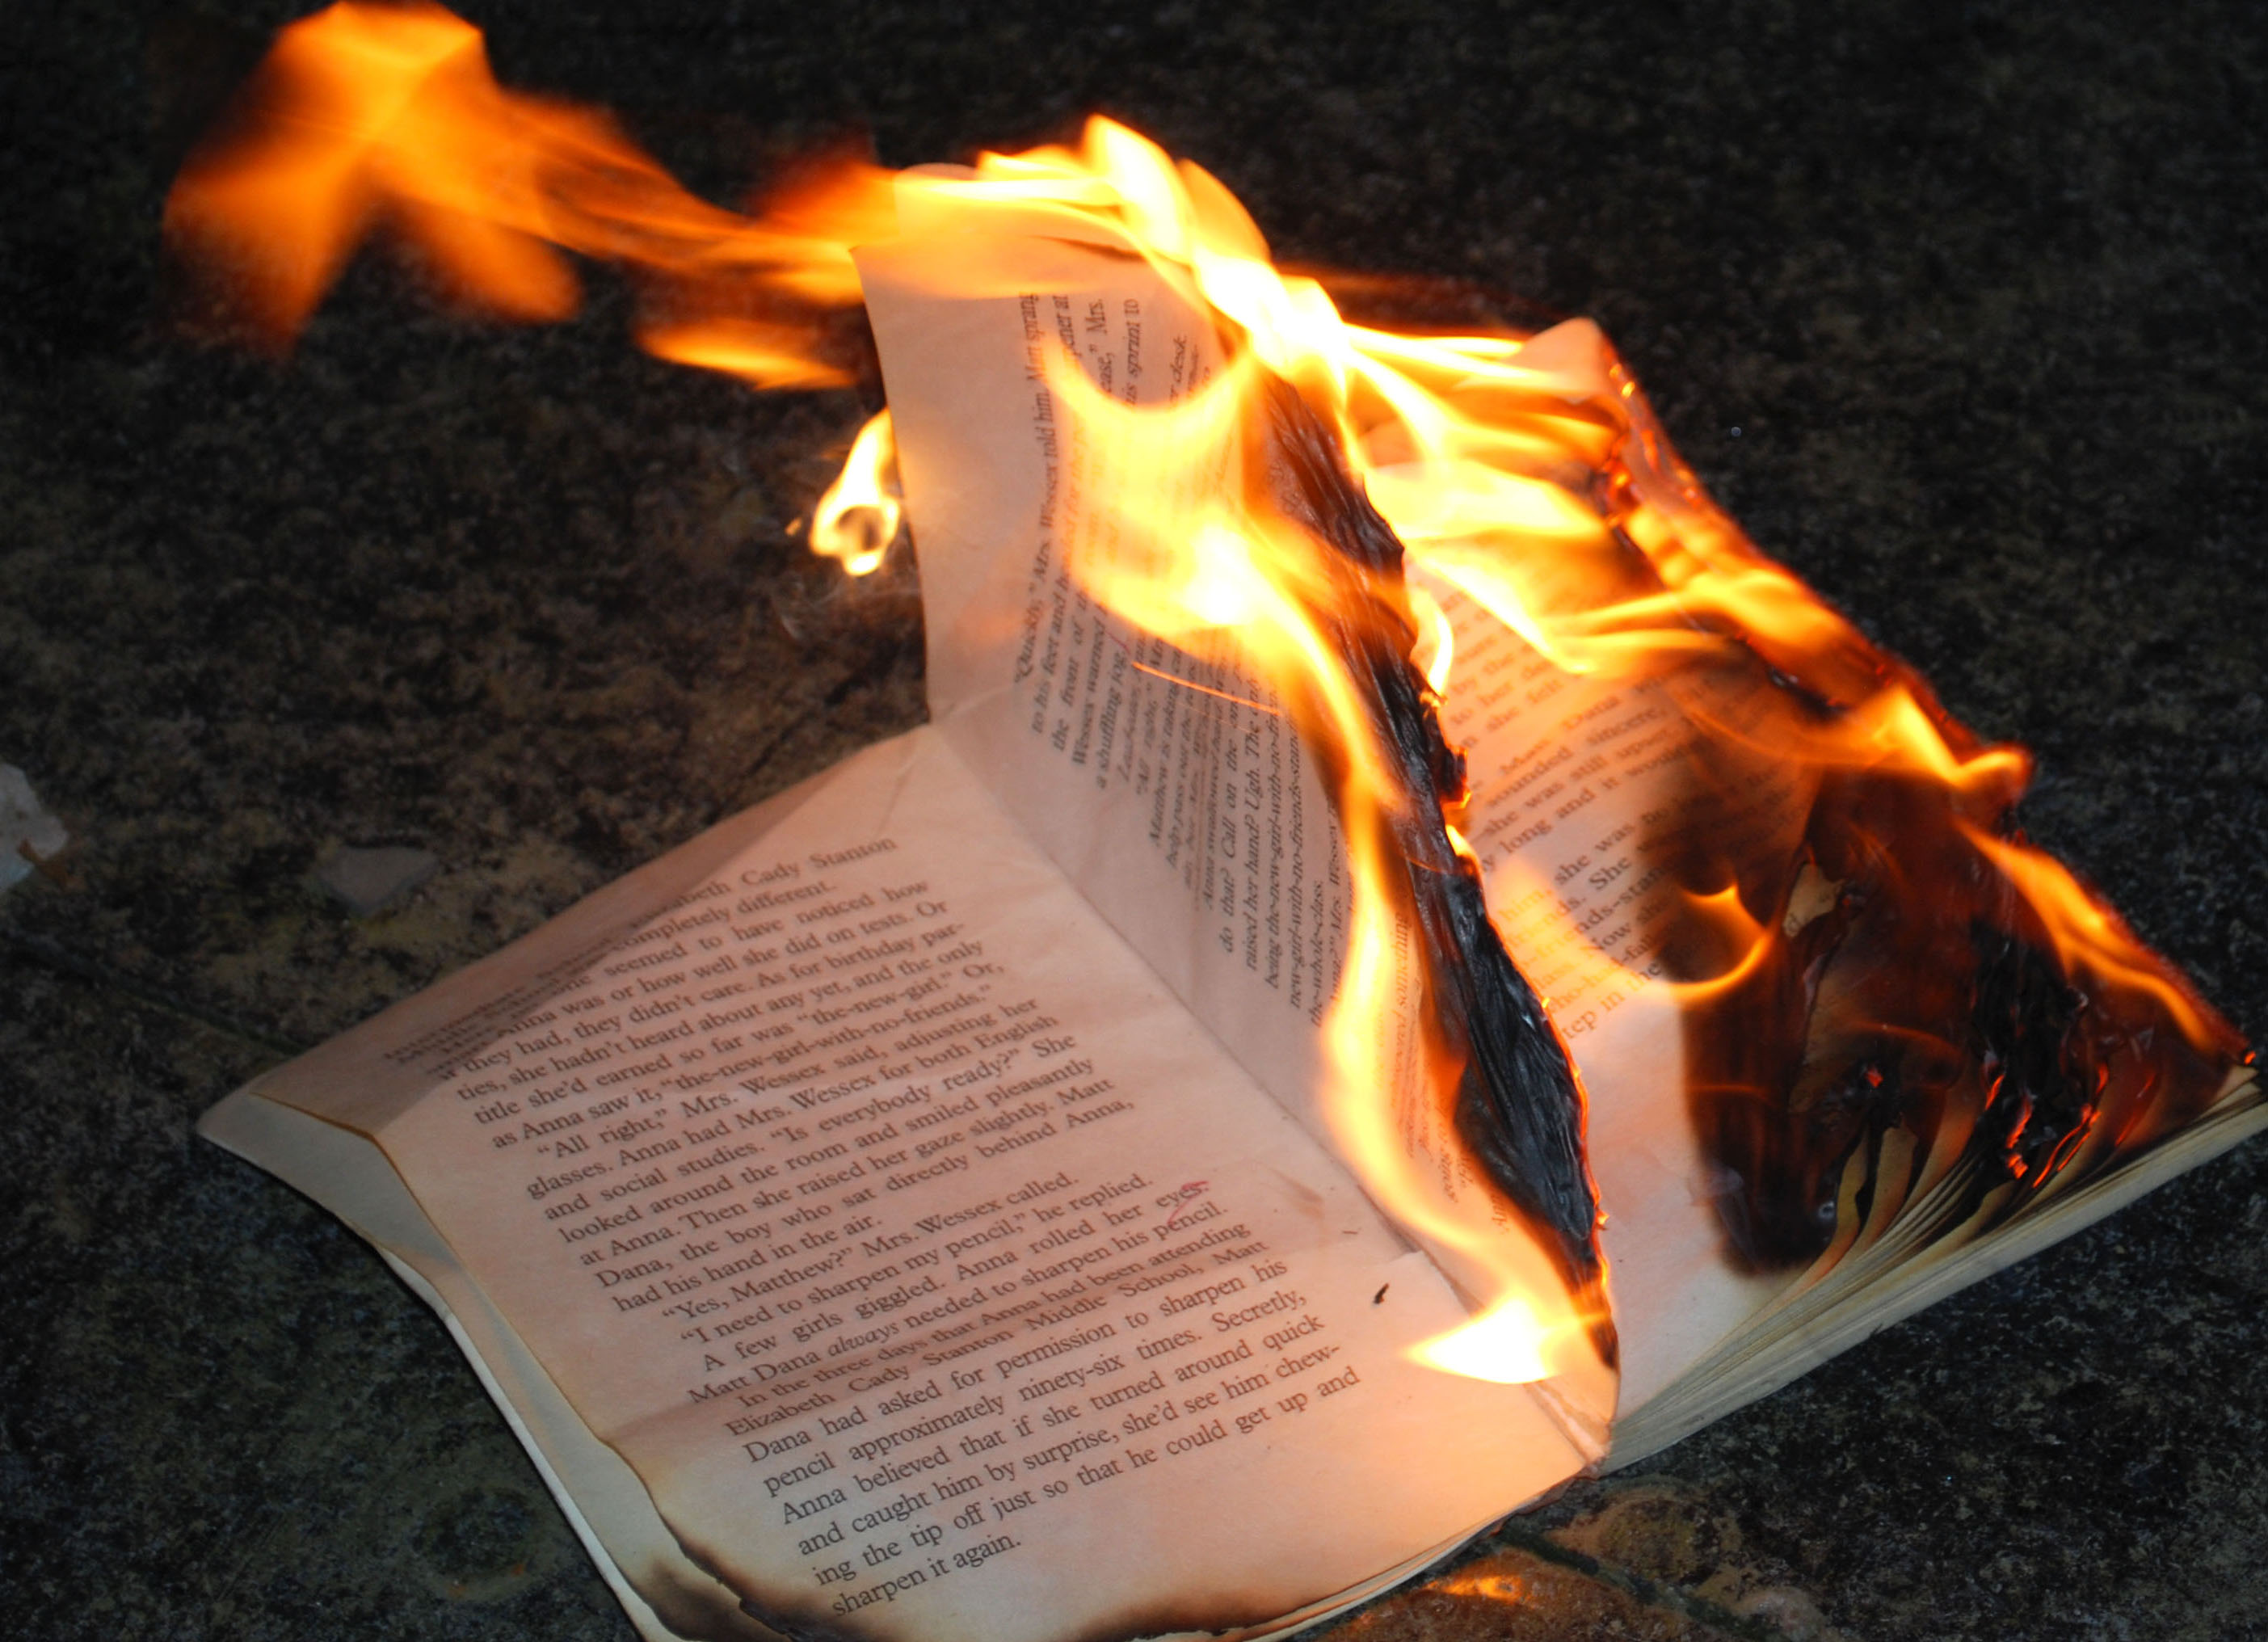 Egypt burns books it says promote violence, Brotherhood ideas